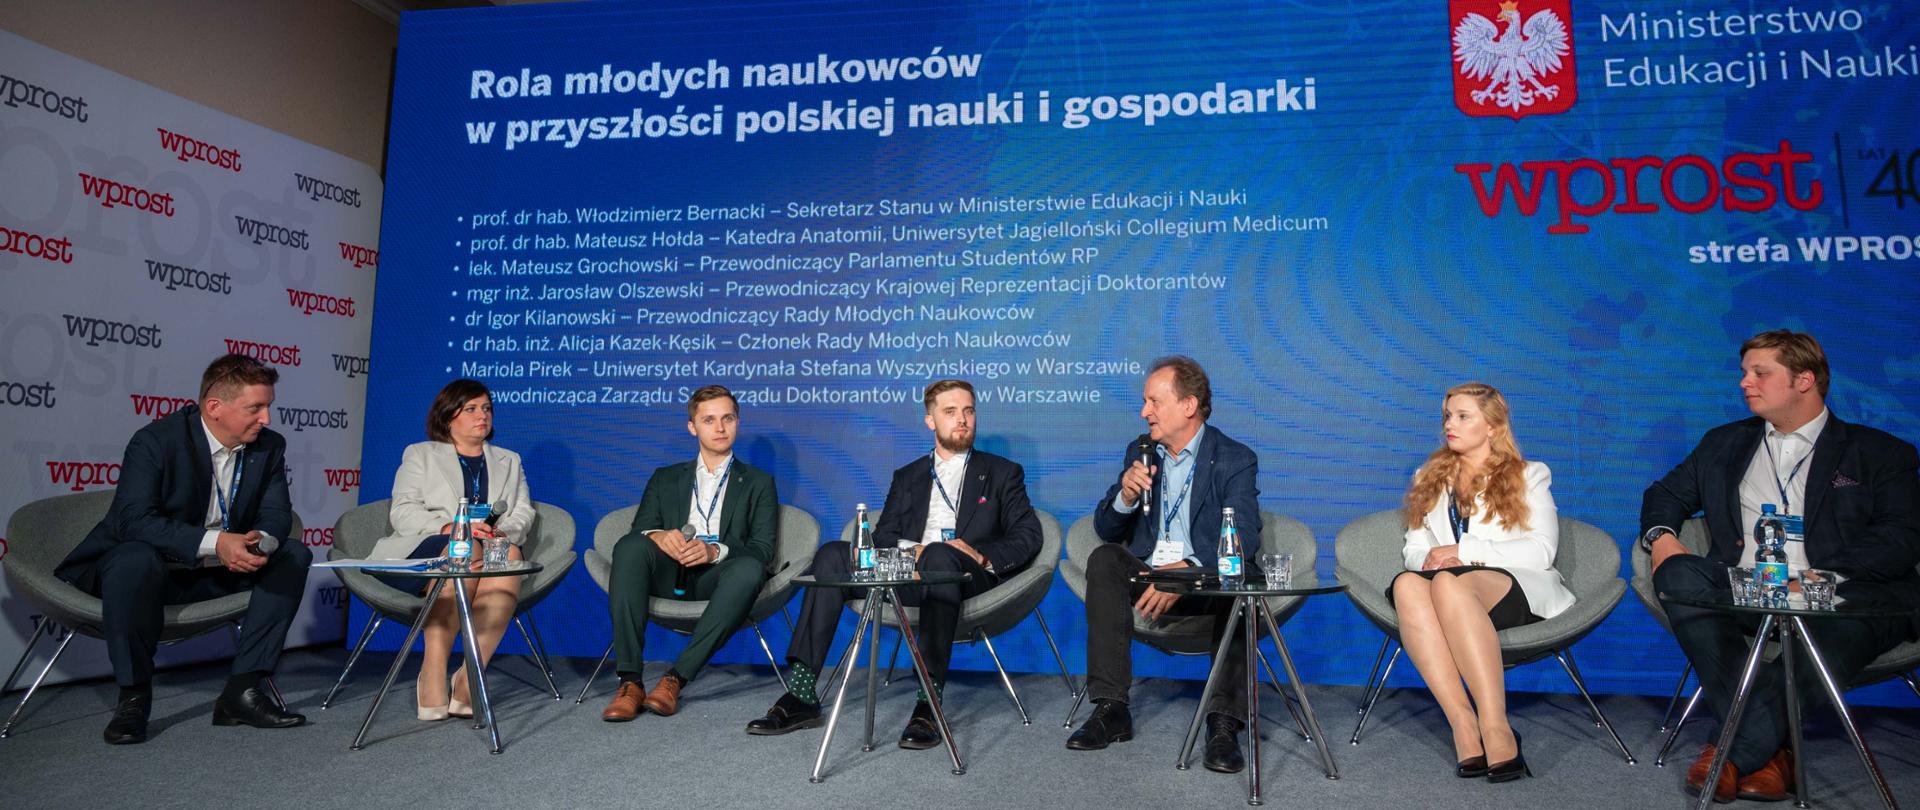 Rola młodych naukowców w przyszłości polskiej nauki i gospodarki